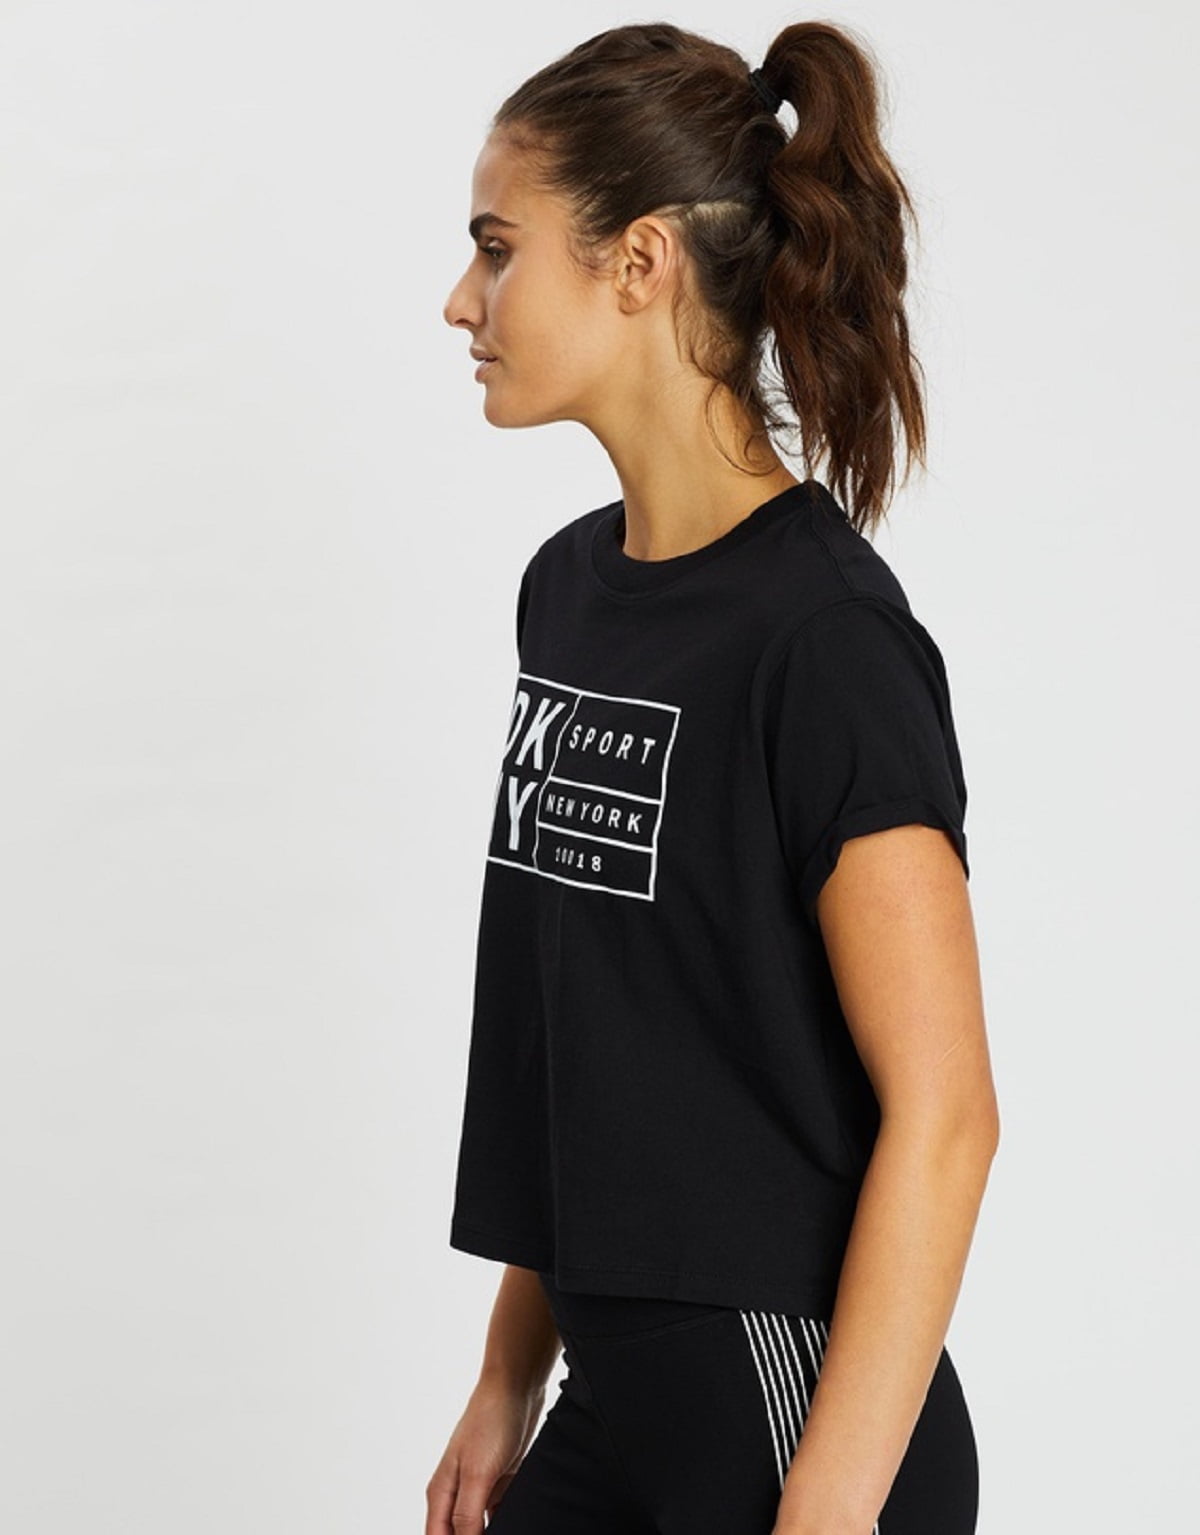 Dkny sport womens t-shirt - Gem